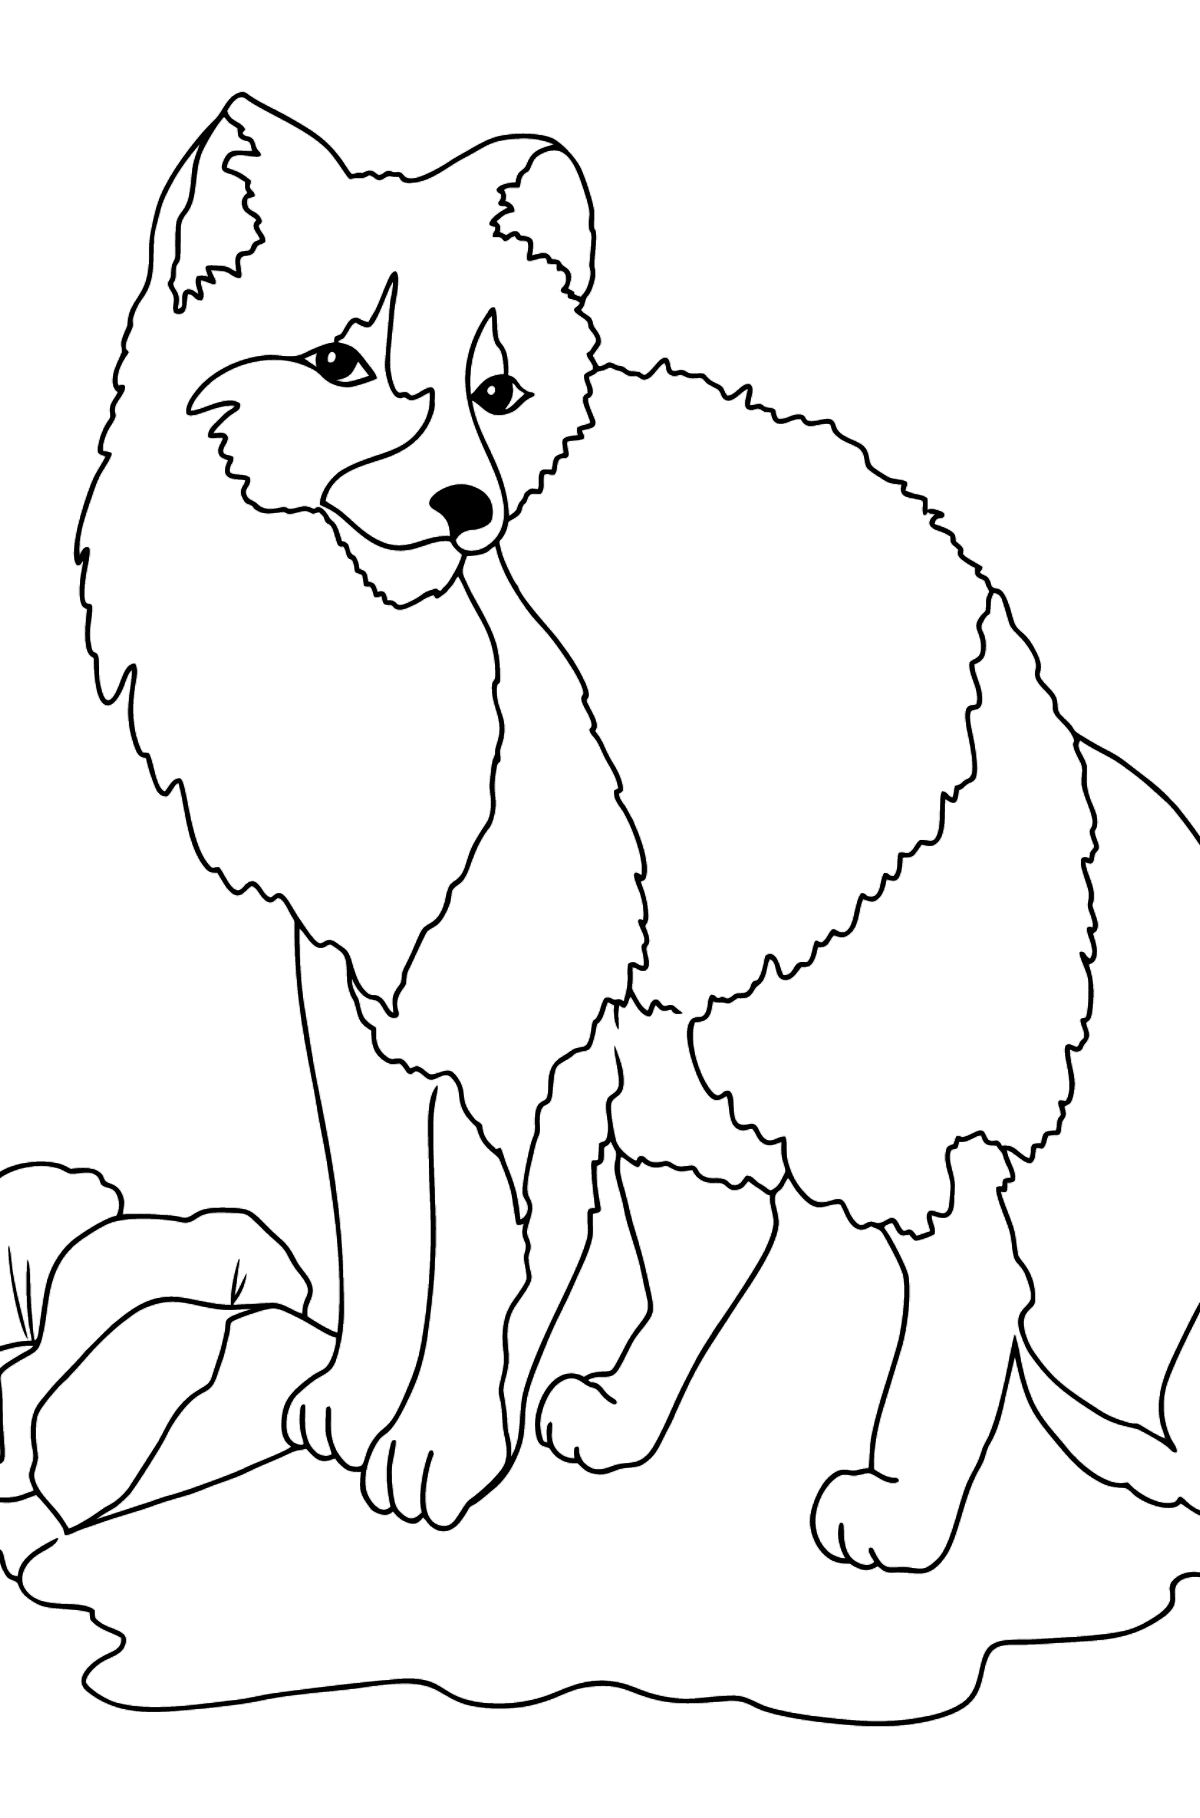 Desen de colorat vulpe pentru copii - Desene de colorat pentru copii